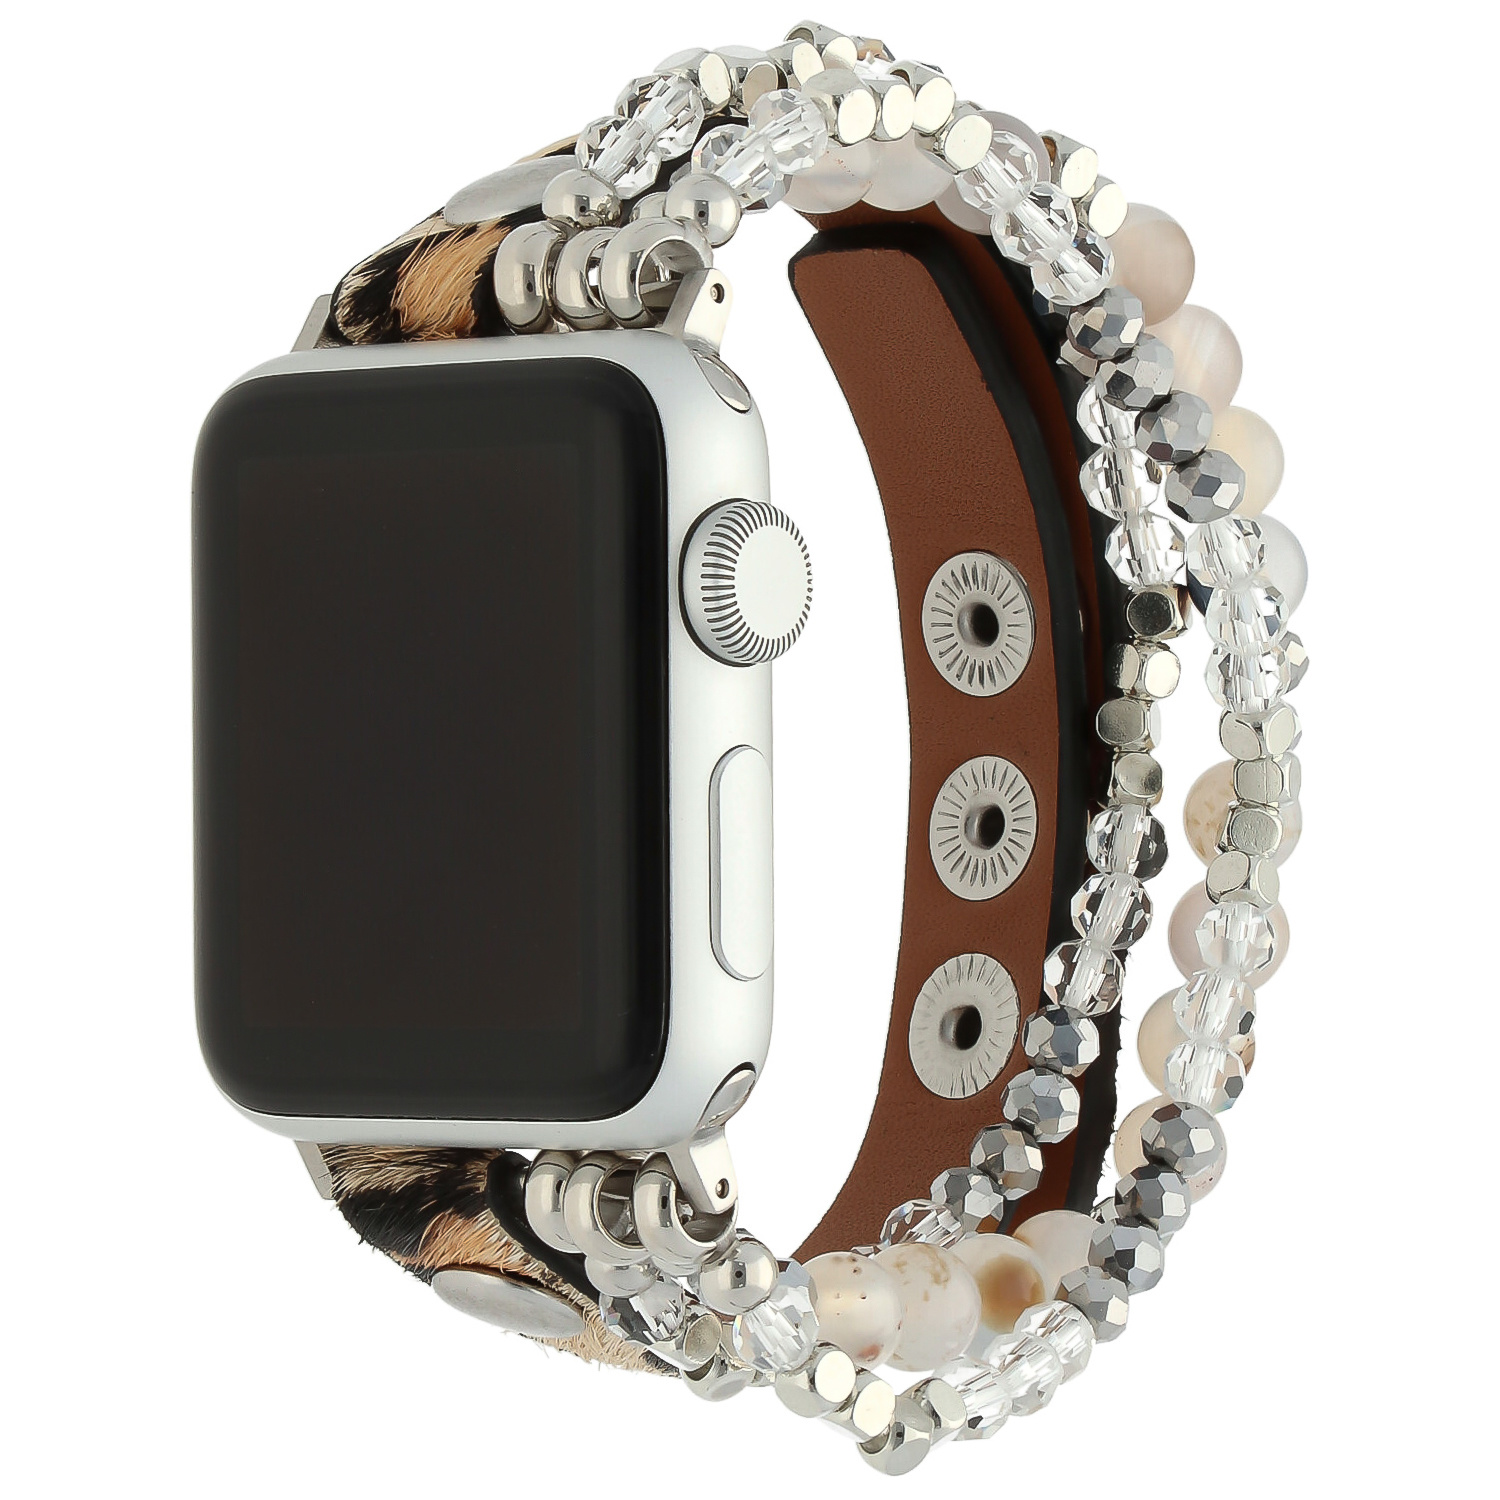 Cinturino gioiello in pelle per Apple Watch - argento leopardato